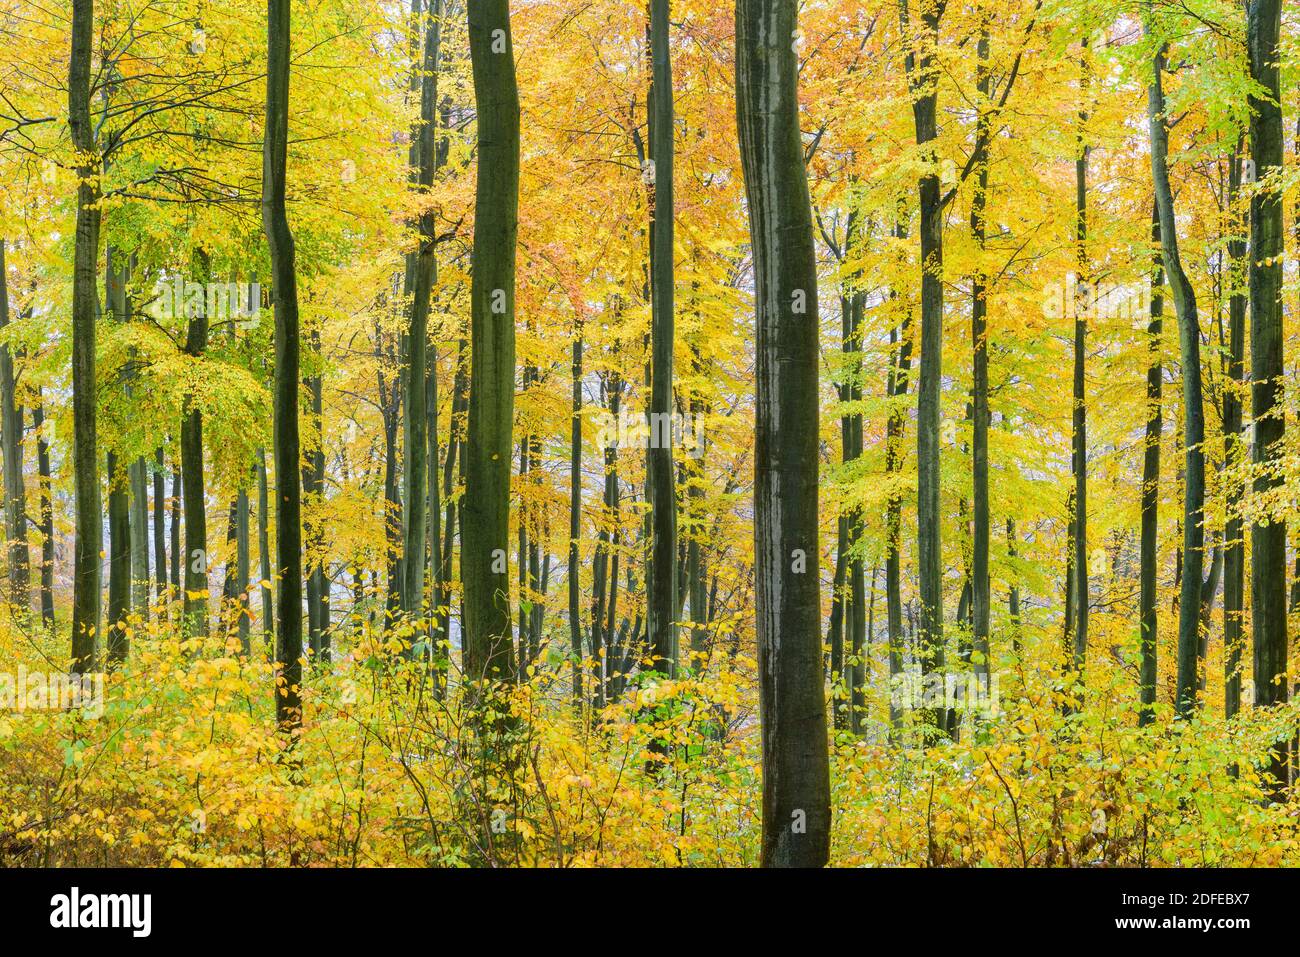 Herbstwald - Buchenwald, Jahreszeiten, Stock Photo